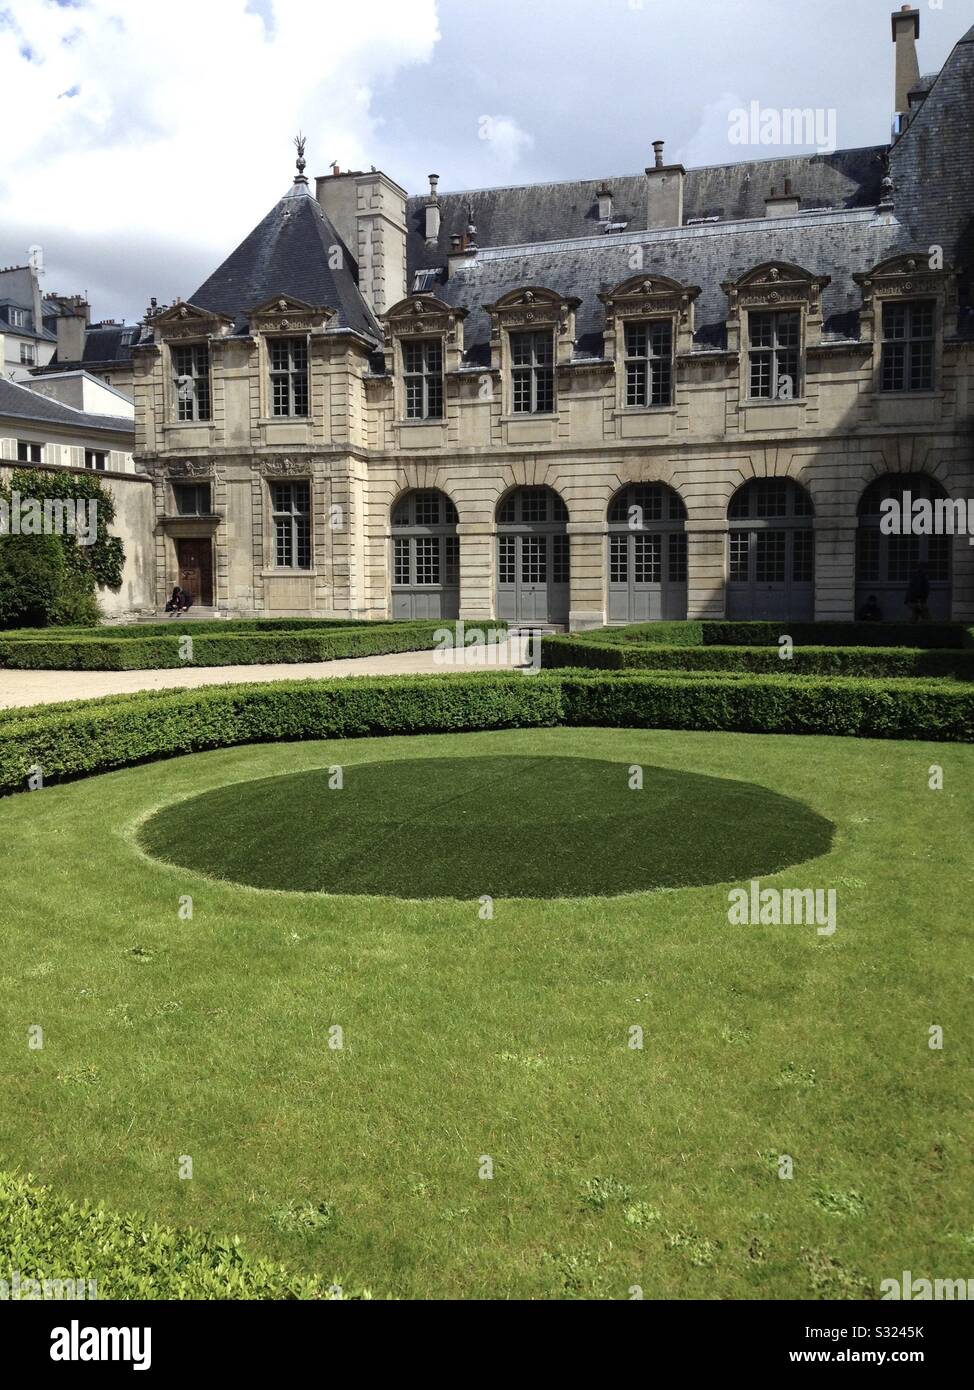 Una de las mansiones históricas construidas en el distrito de le Marais en París, Francia. Foto de stock